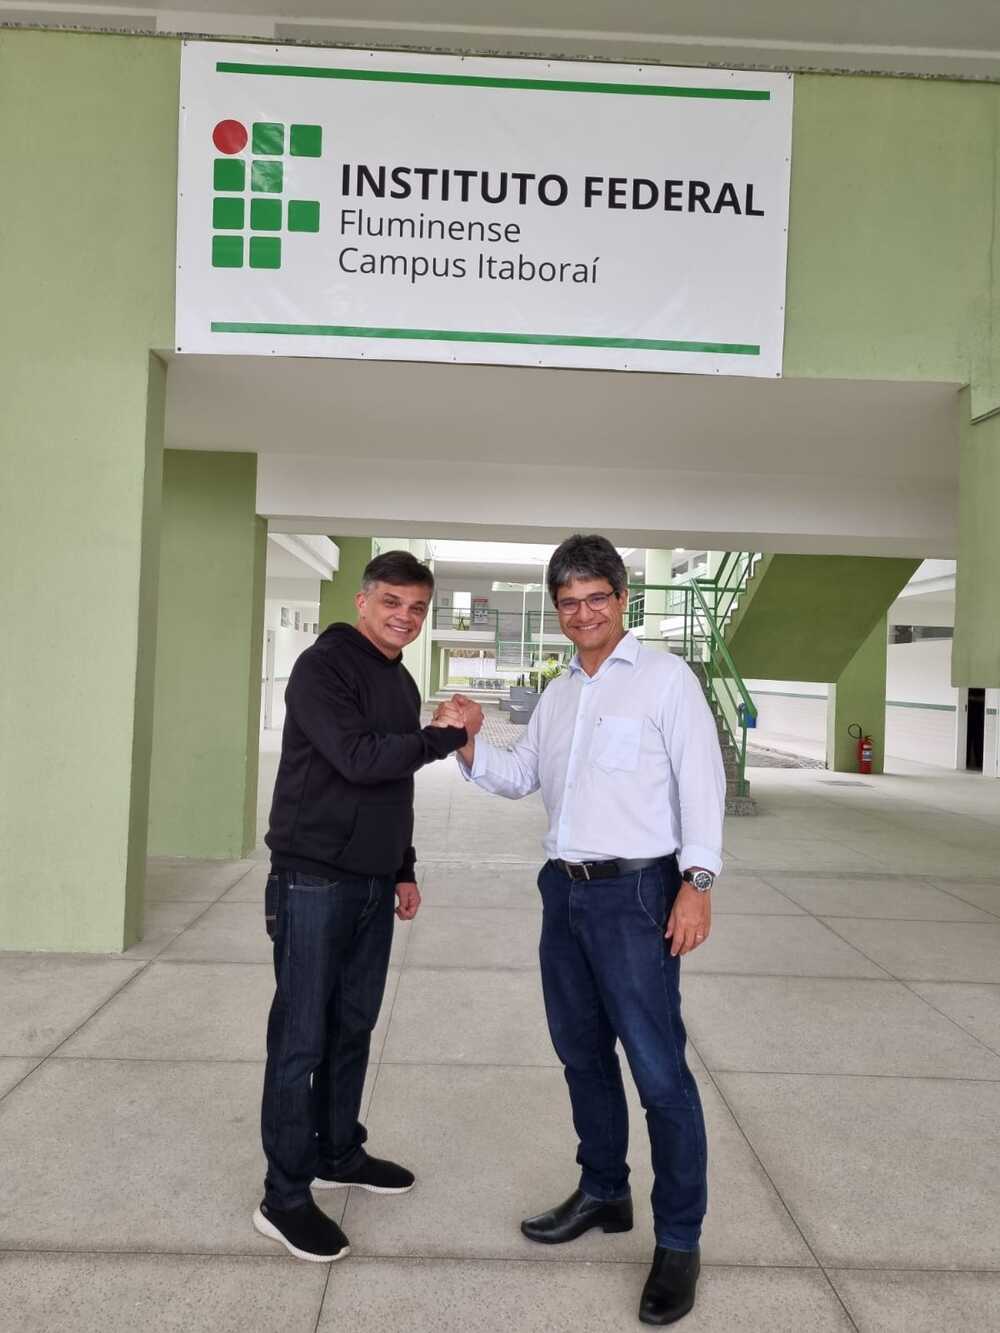 IFF de Itaboraí será referência no ensino de energia e sustentabilidade 